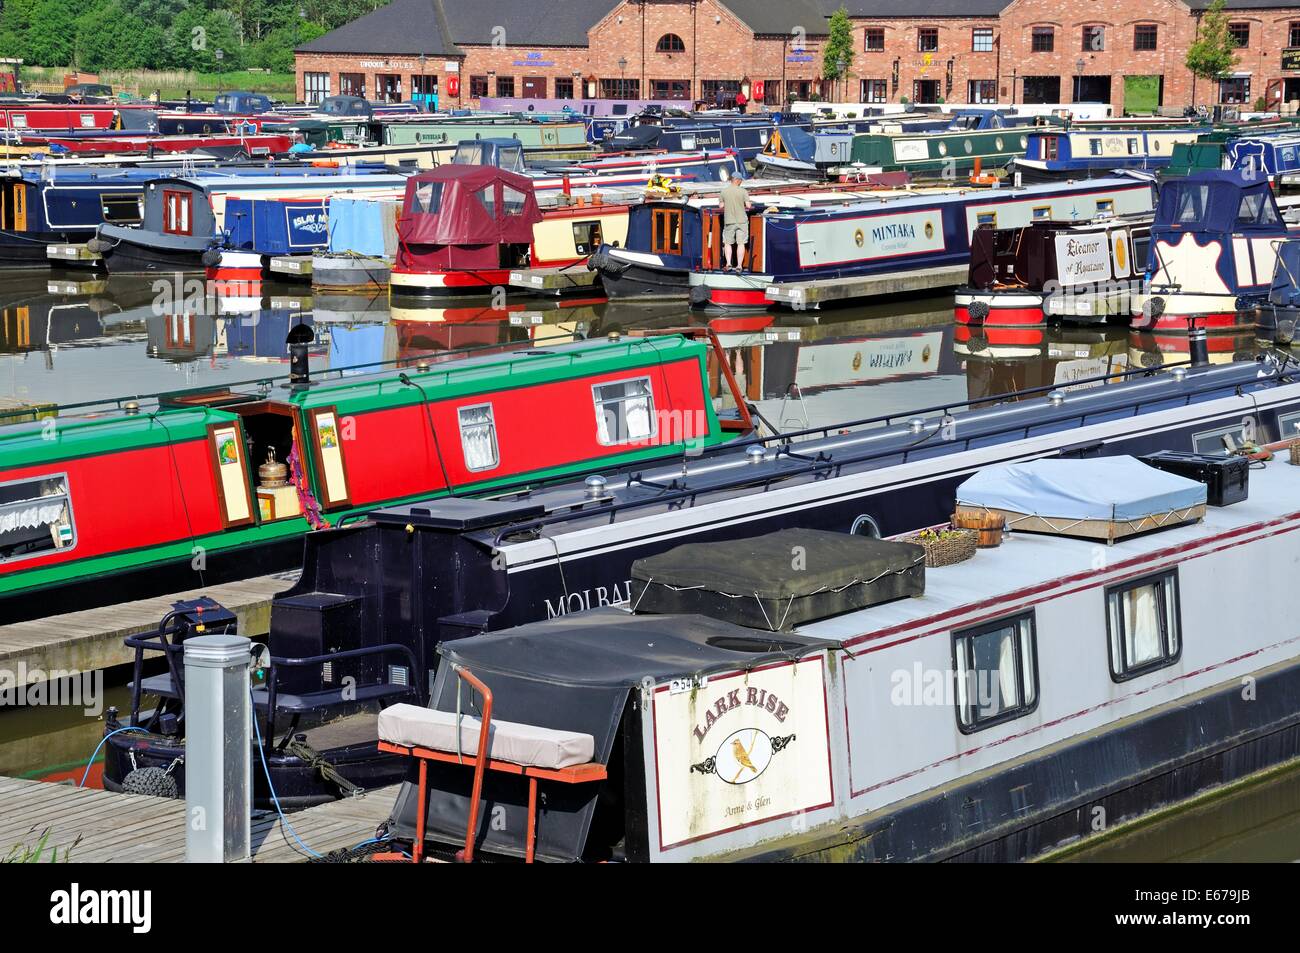 Narrowboats sur leurs amarres dans le bassin du canal avec des bars, boutiques et restaurants à l'arrière, Barton Marina, en Angleterre. Banque D'Images